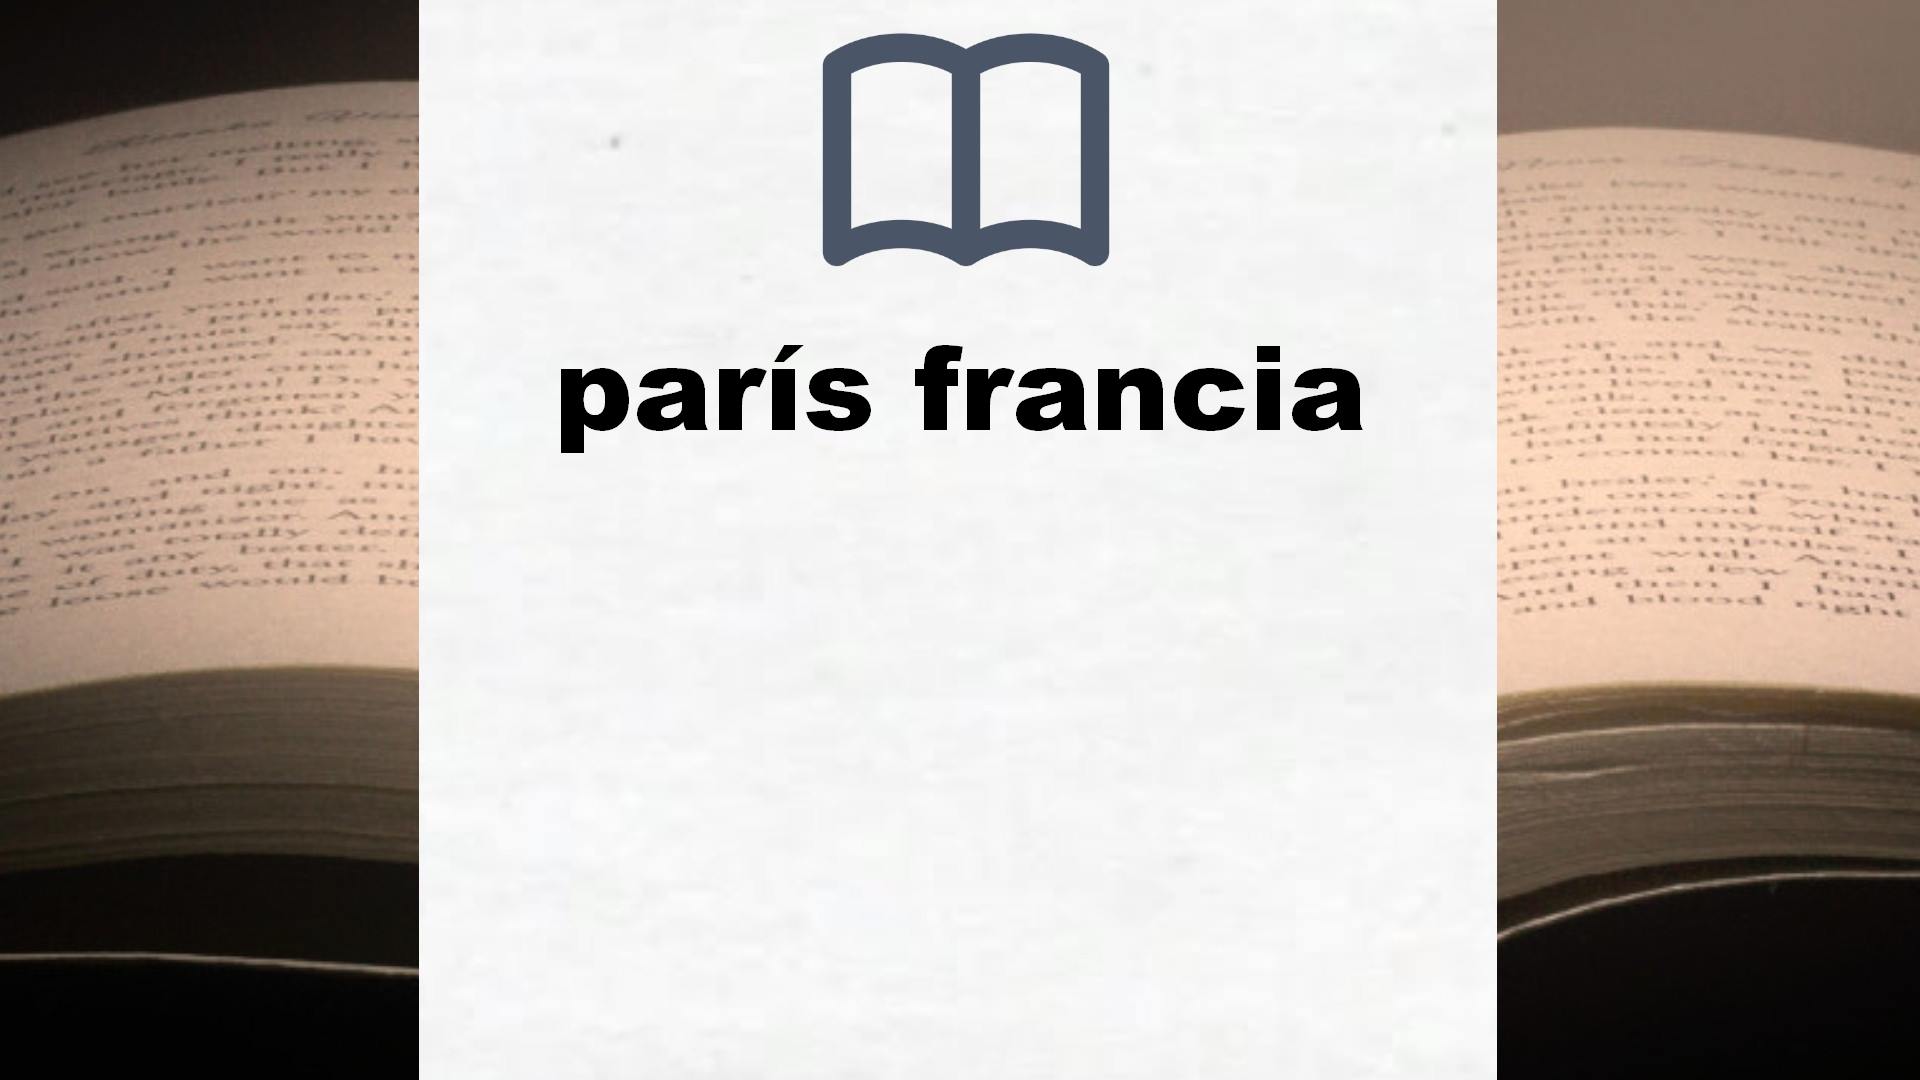 Libros sobre parís francia